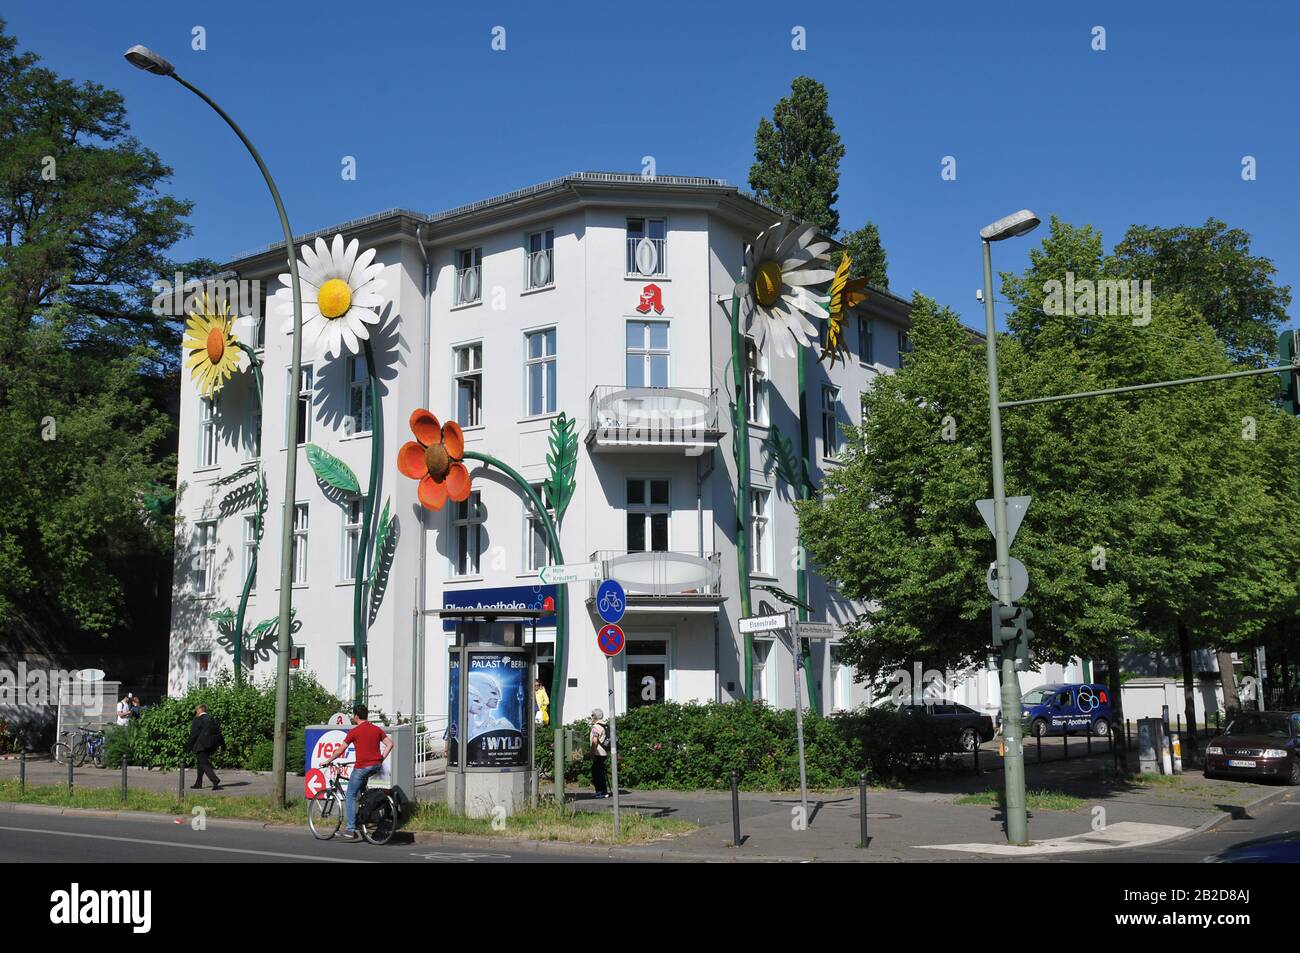 Aerztehaus, Elsenstrasse, Treptow, Berlin, Deutschland Stock Photo